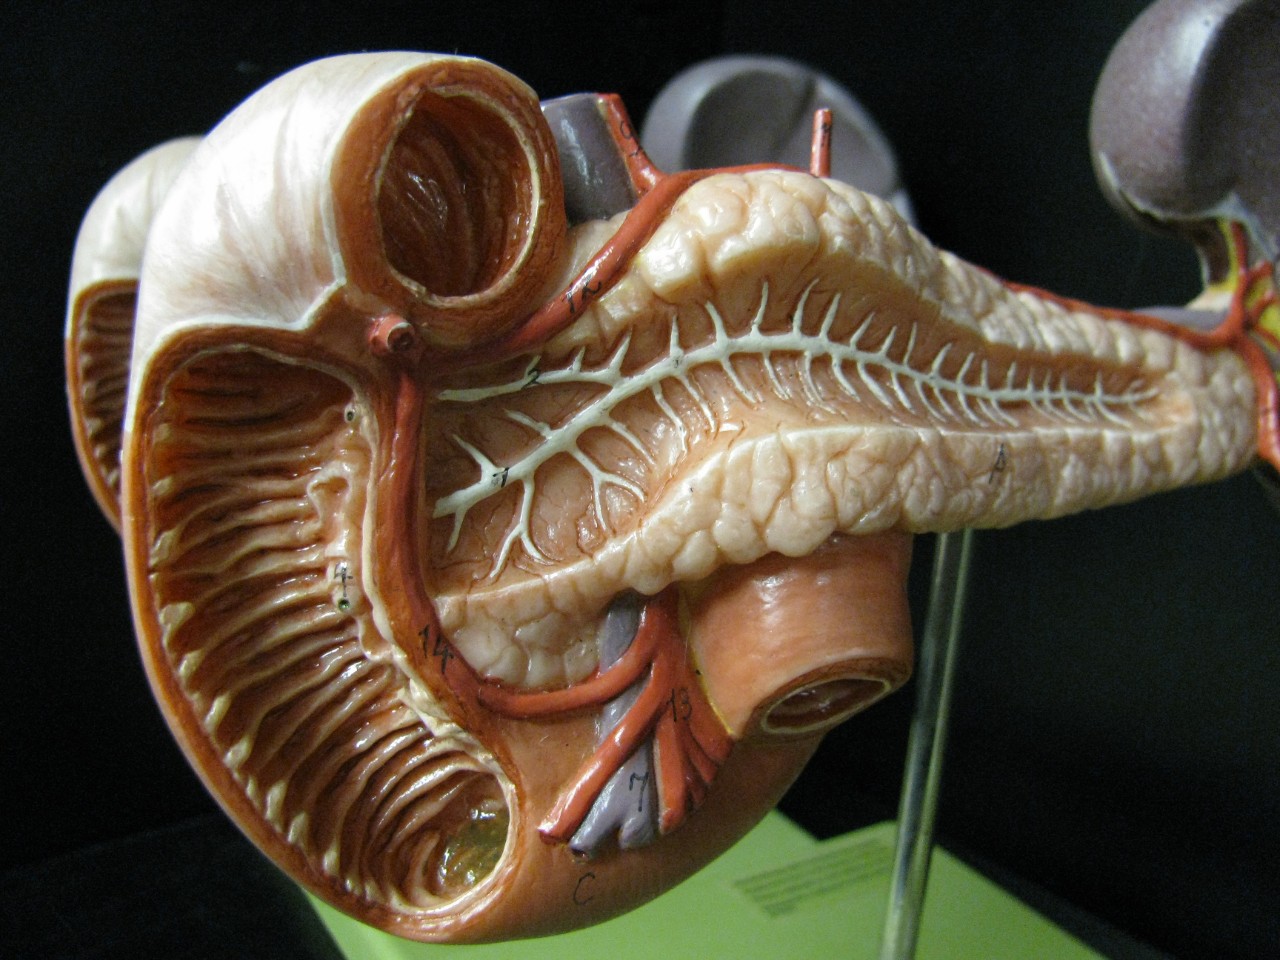 a model of a pancreas